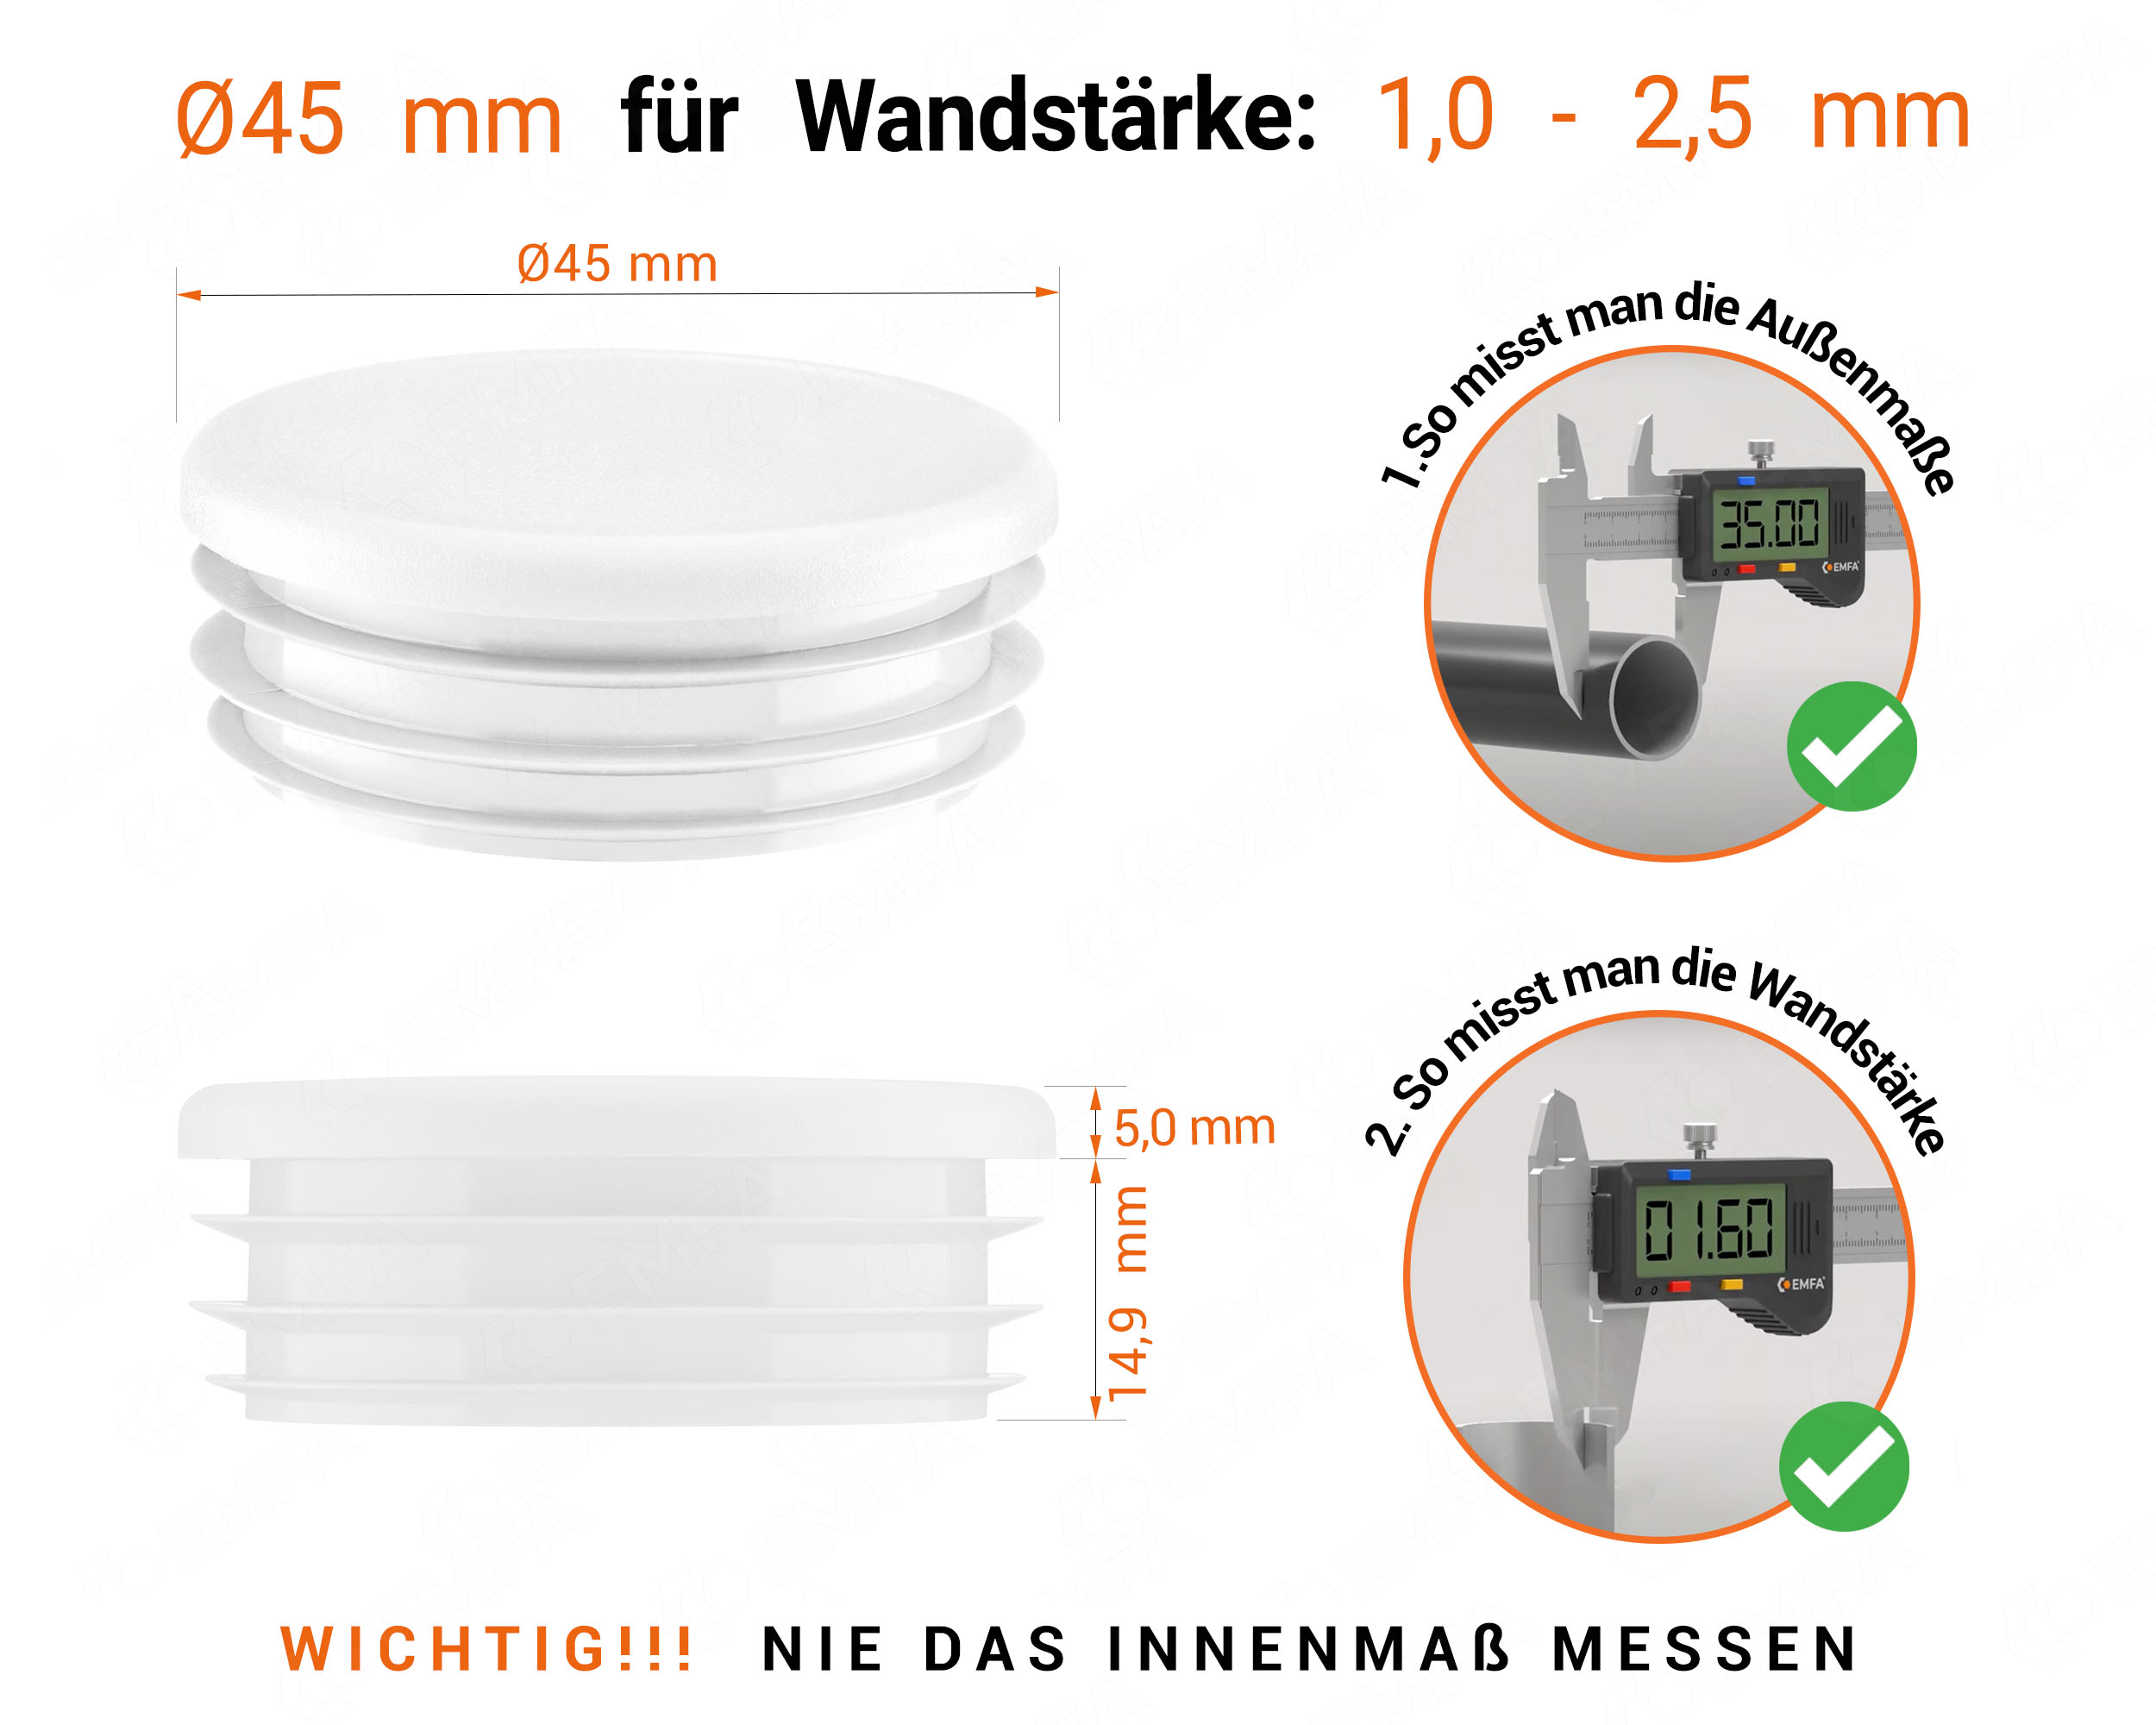 Weiße Endkappe für Rundrohre in der Größe 45 mm mit technischen Abmessungen und Anleitung für korrekte Messung